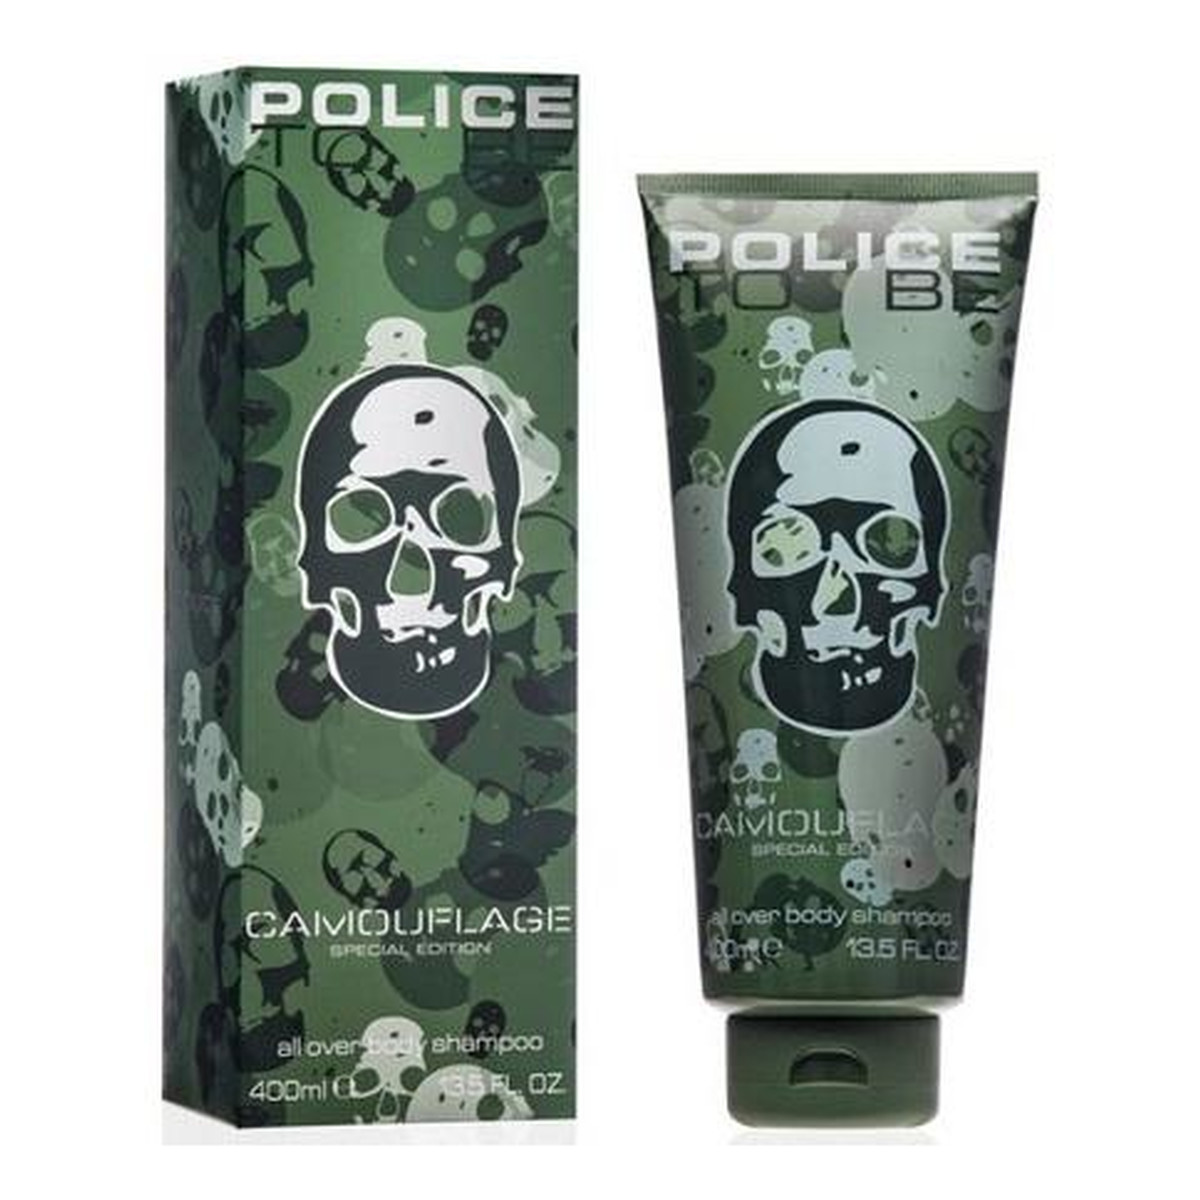 Police To Be Man Camouflage Special Edition żel do mycia ciała i włosów 400ml